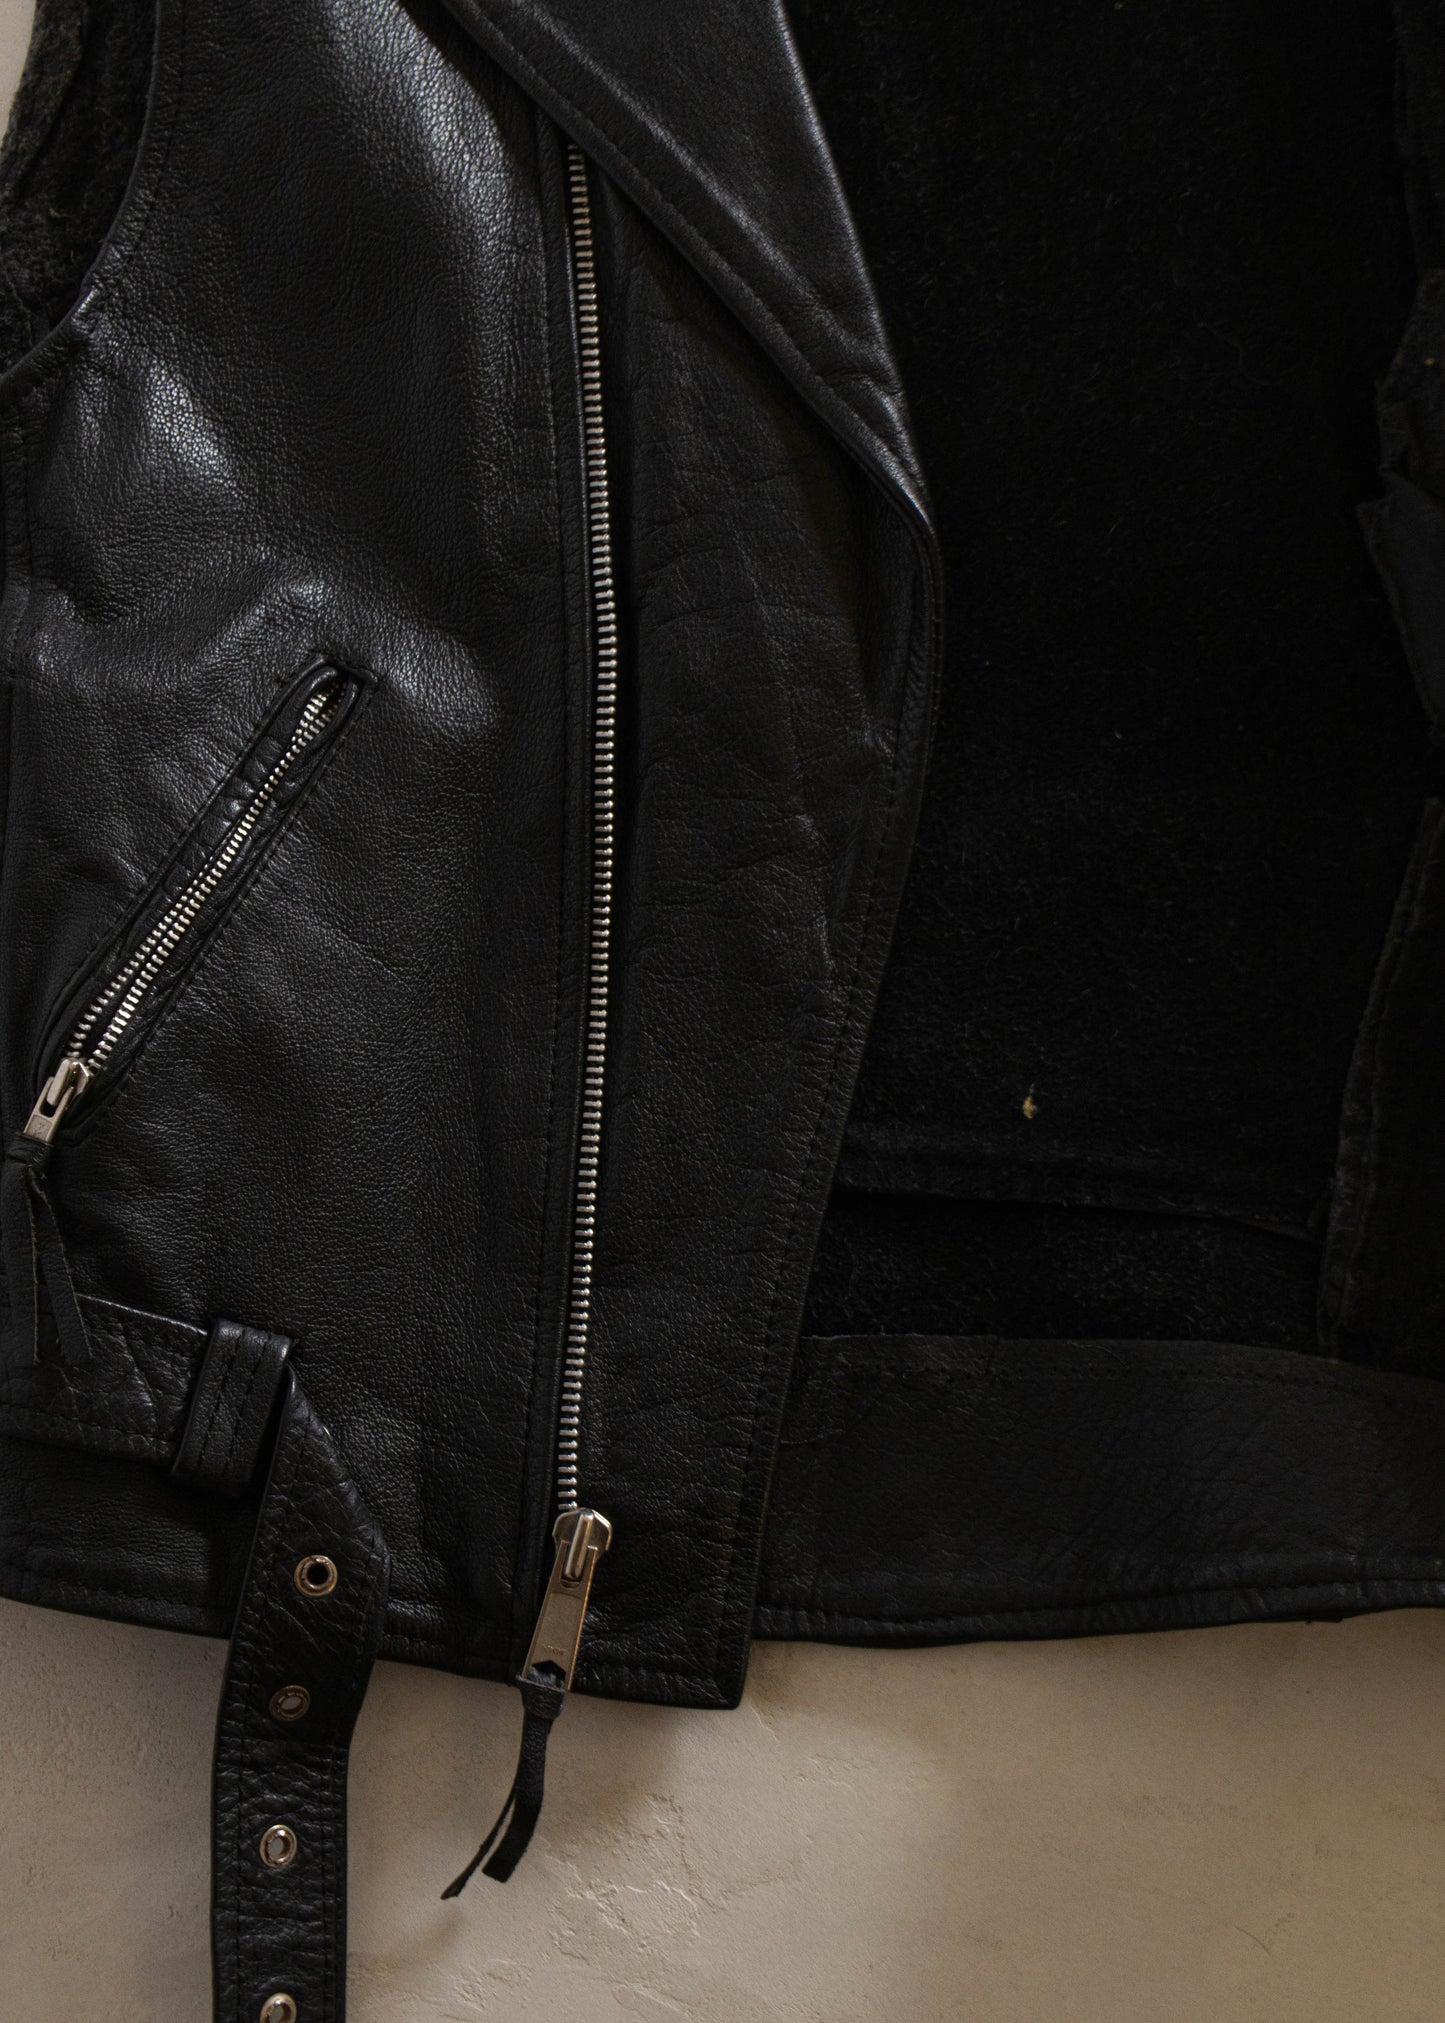 1980s Leather Moto Vest Size S/M